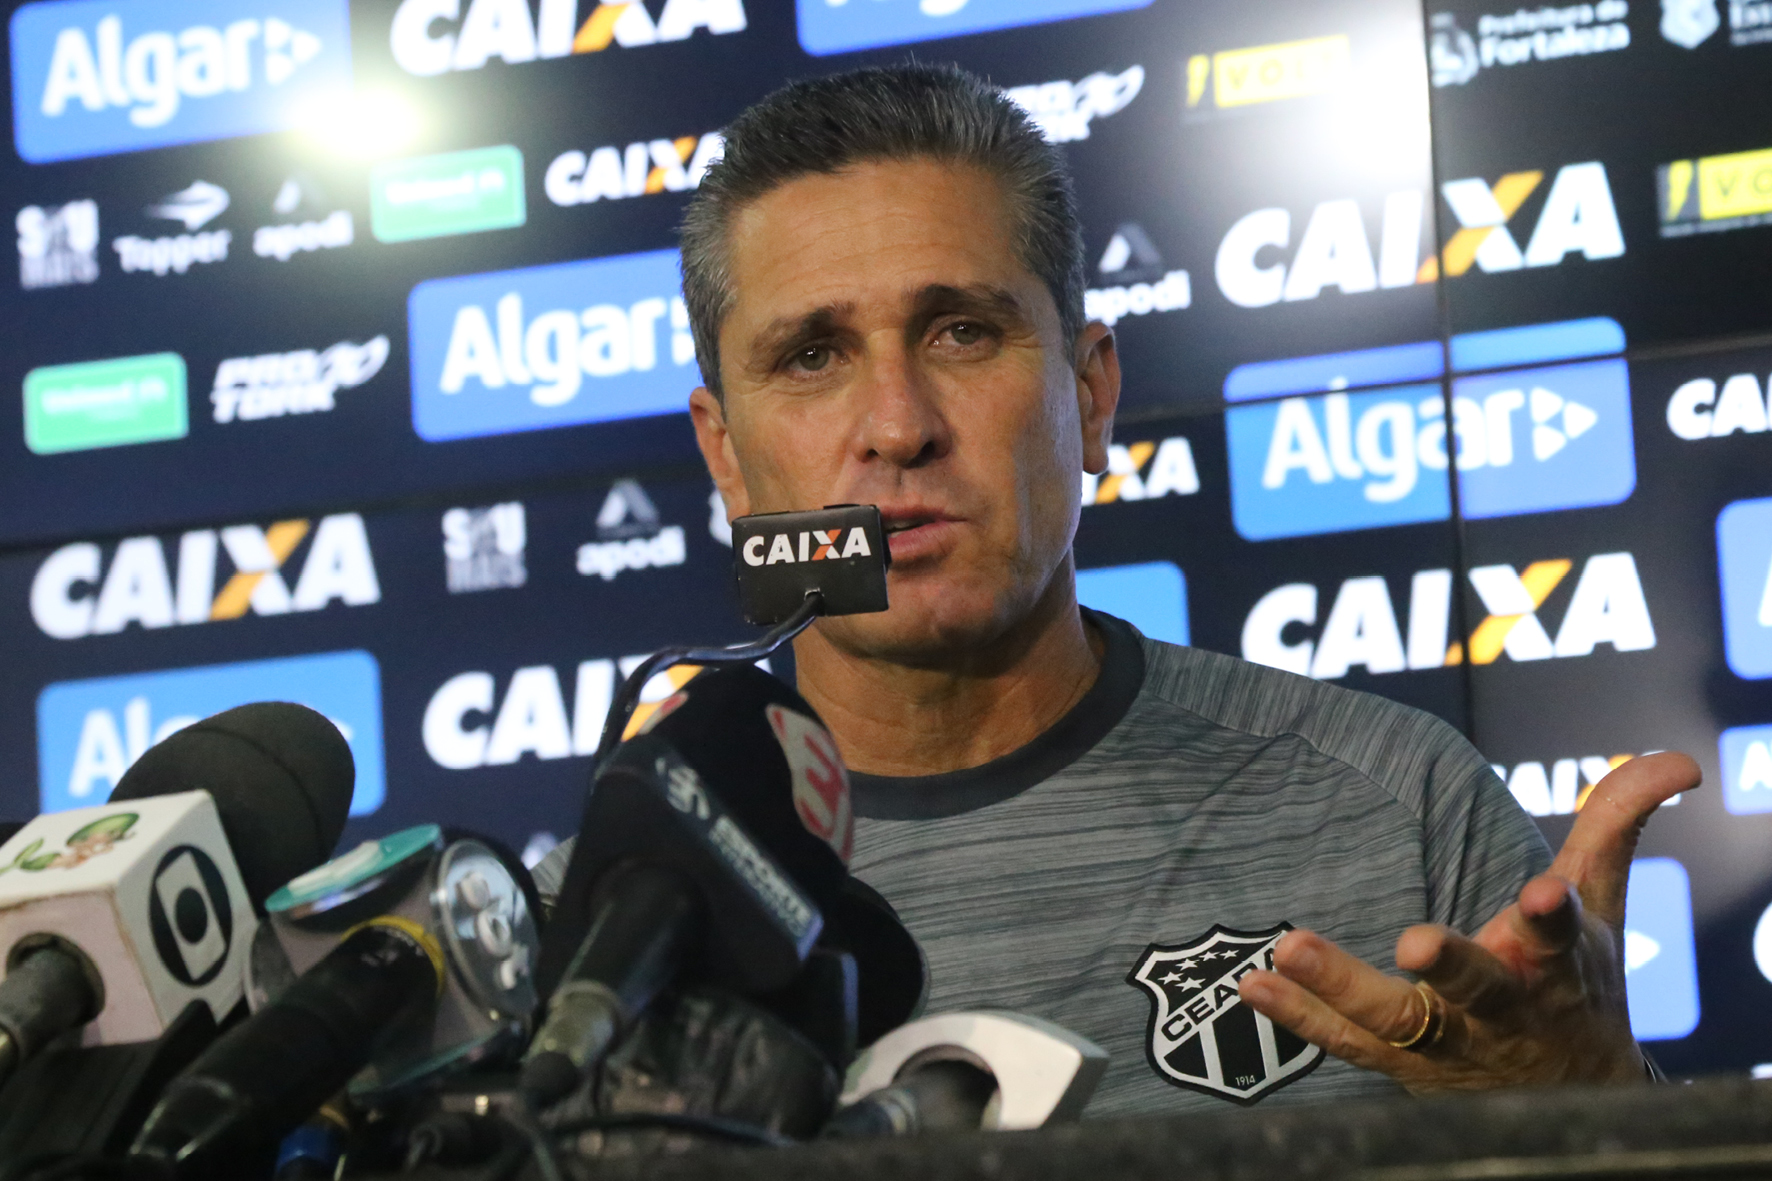 Técnico Jorginho é apresentado à imprensa: “Momento é desafiador, mas estou confiante”